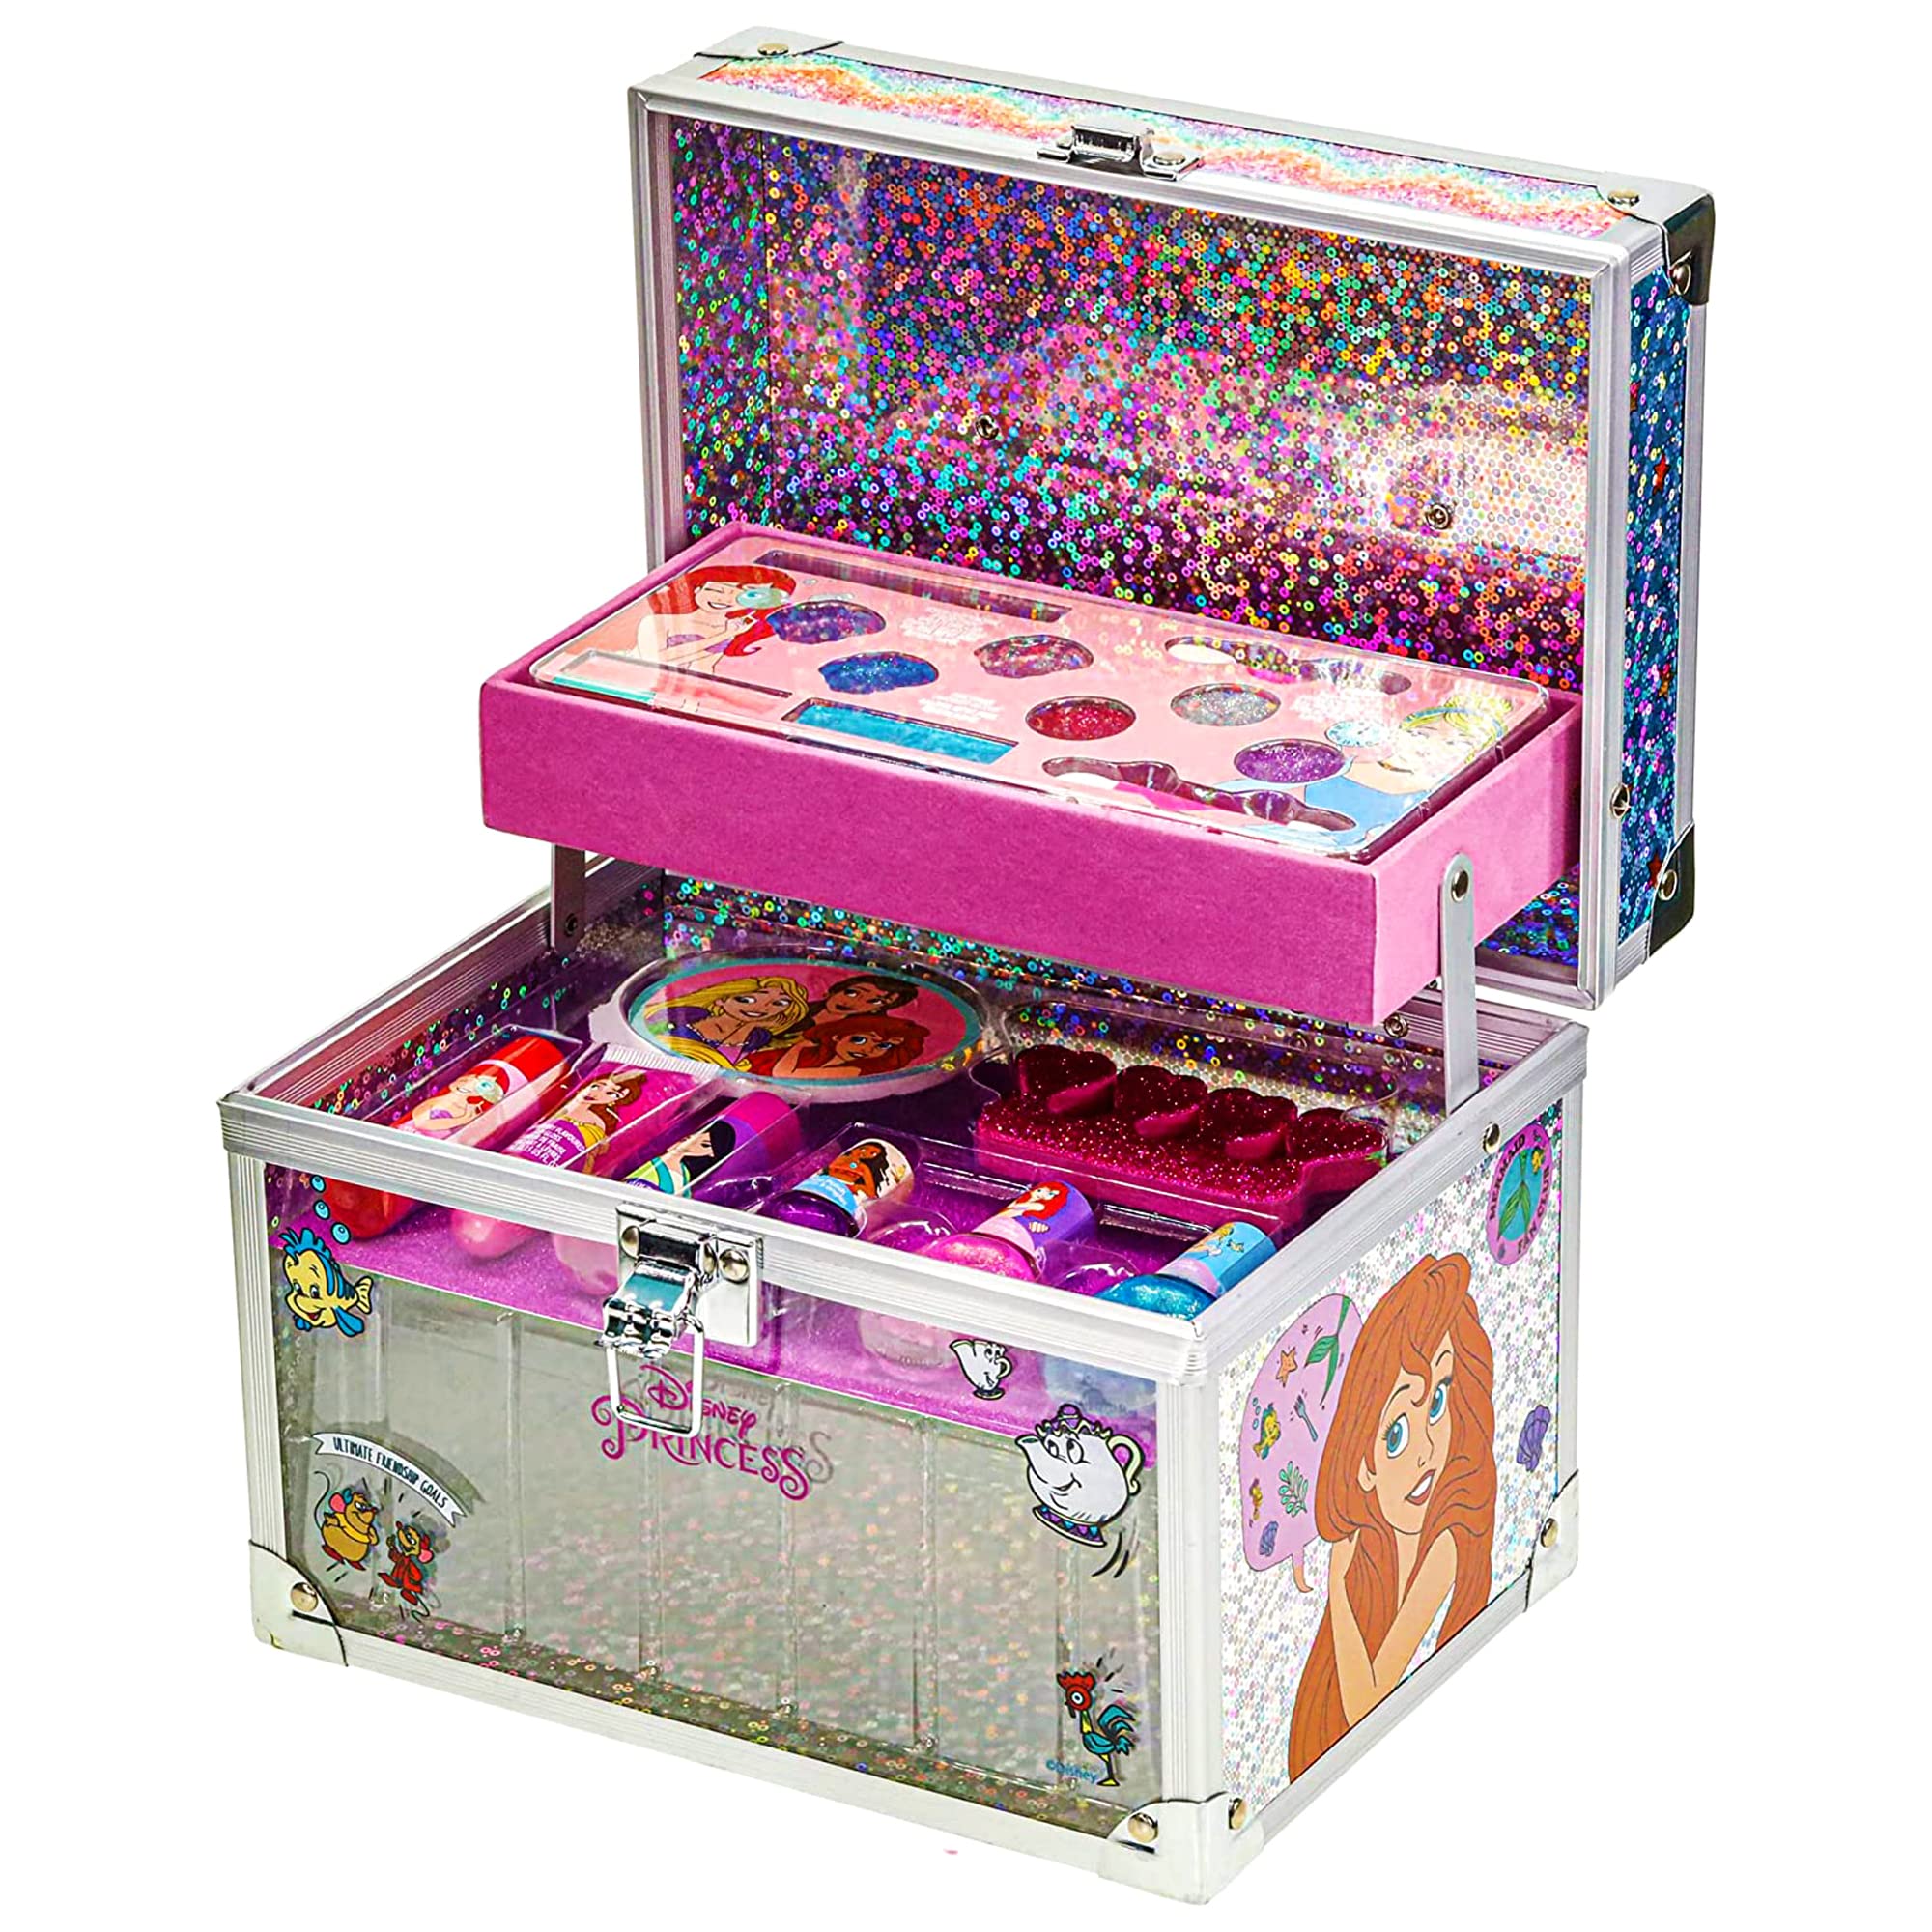 stylé  Disney Princess - Townley Girl Train Case Cosmetic Makeup Set Includes Lip Gloss, Ombre à paupières, Brosse, Vernis ! À partir de 3 Ans, Parfait pour fêtes, soirées Pyjama et soirées Maquillage. RRXJ5IBxY Boutique